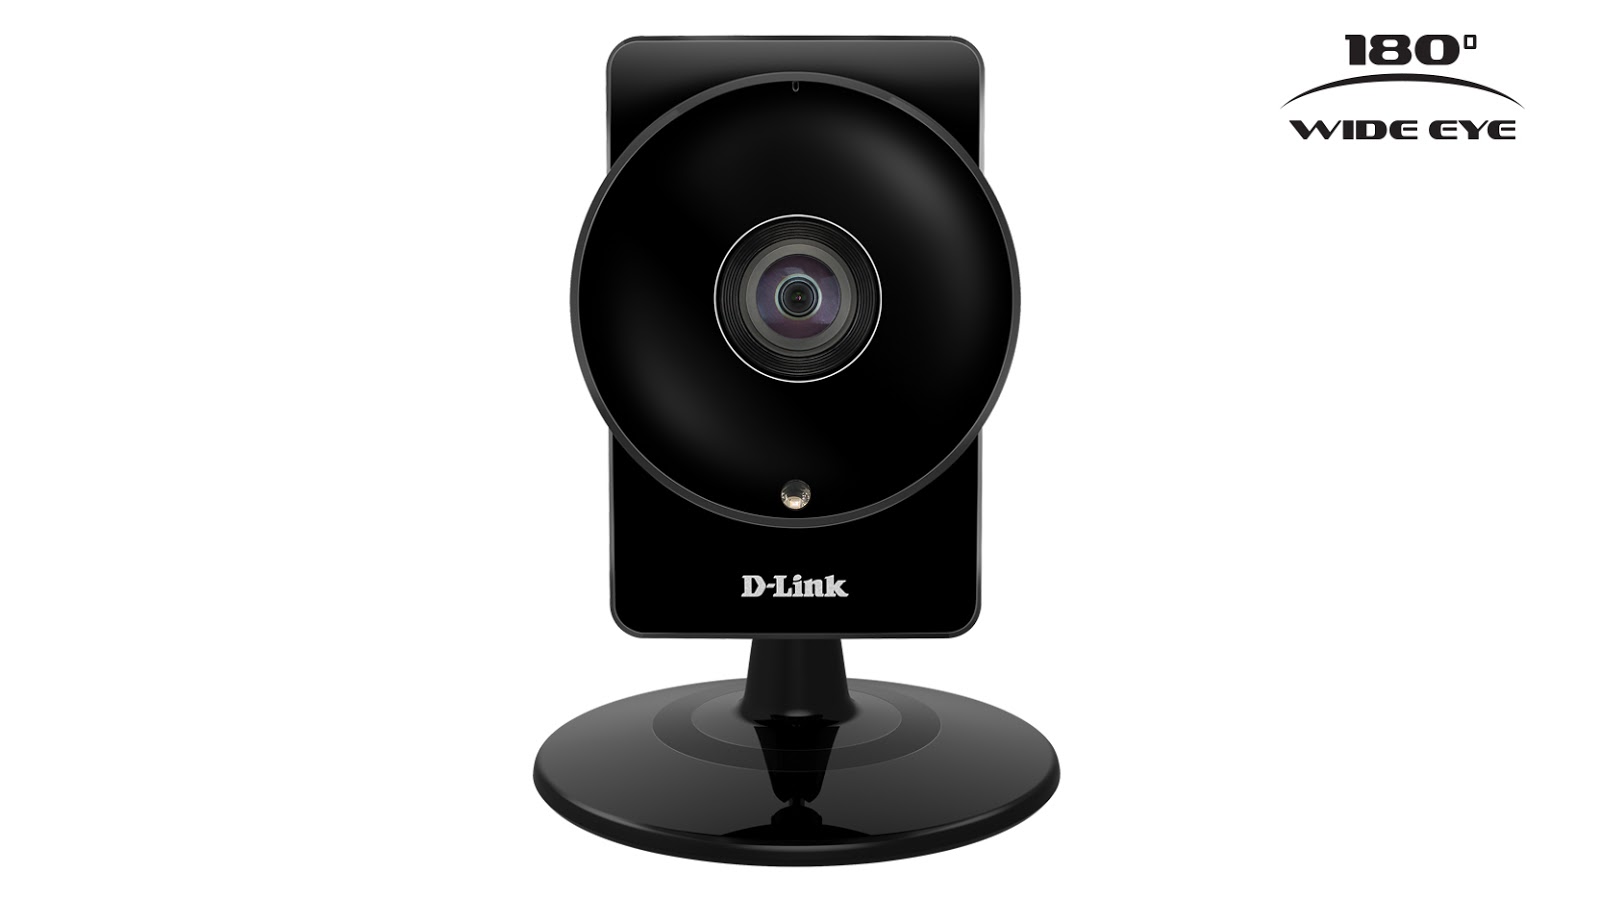 D-Link DCS-960L Wi-Fi camera